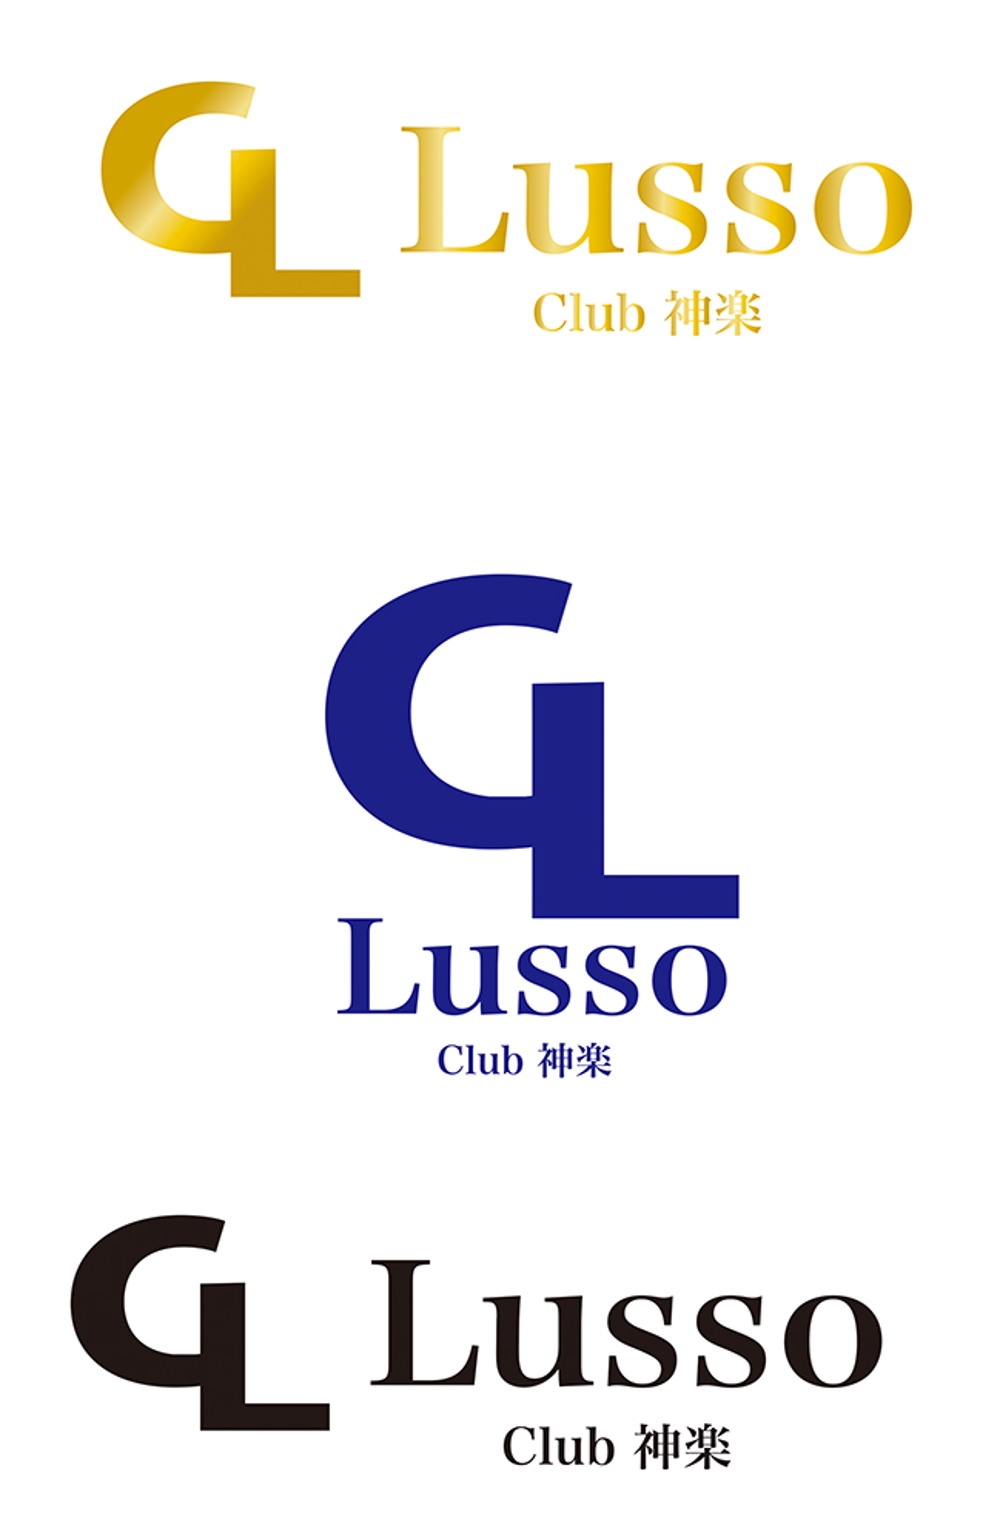 愛媛県松山市の超一流クラブのロゴ